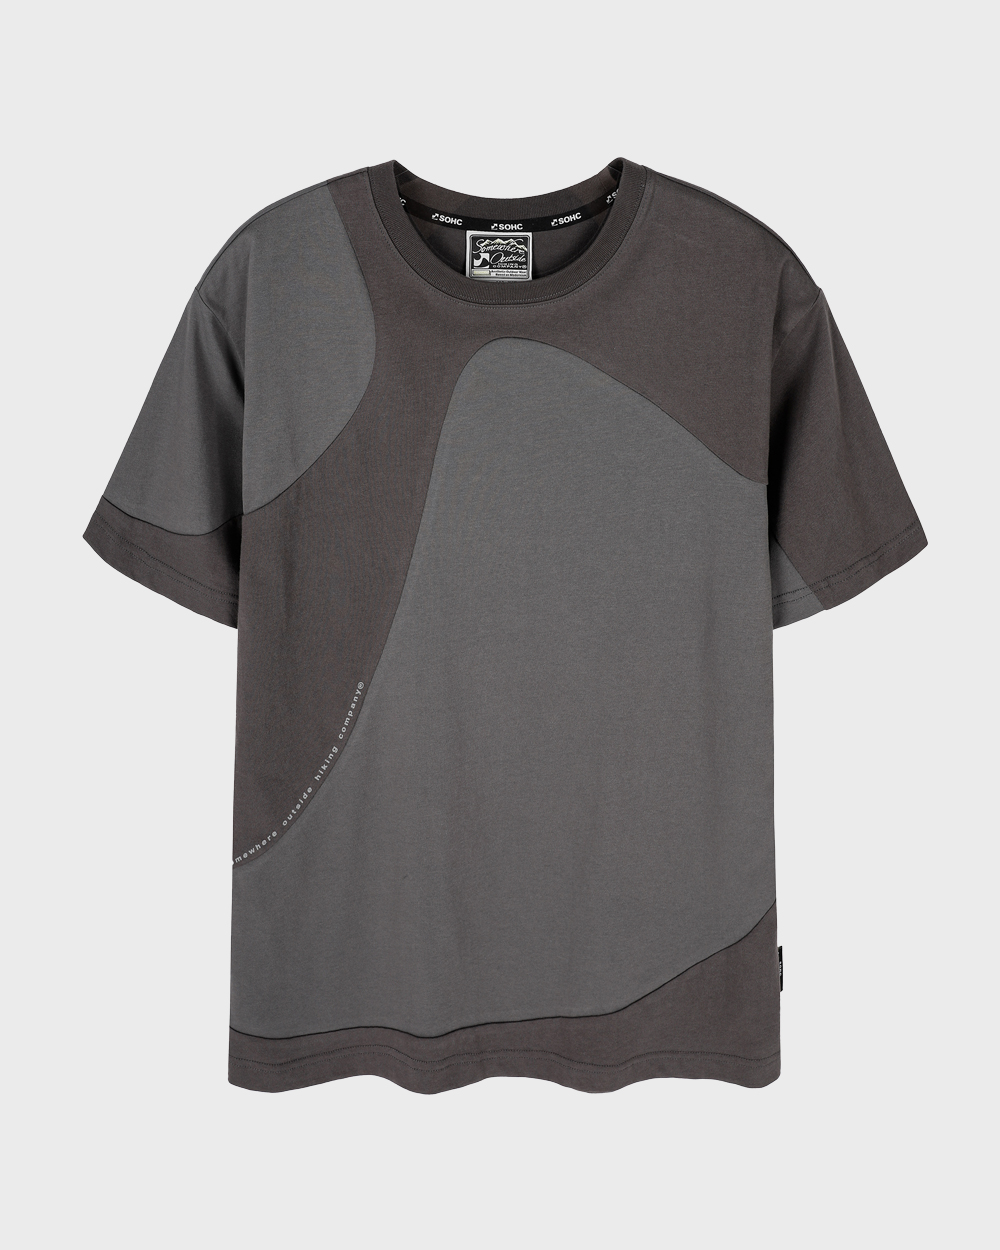 Symbol 2-Color T Shirt (Charcoal)